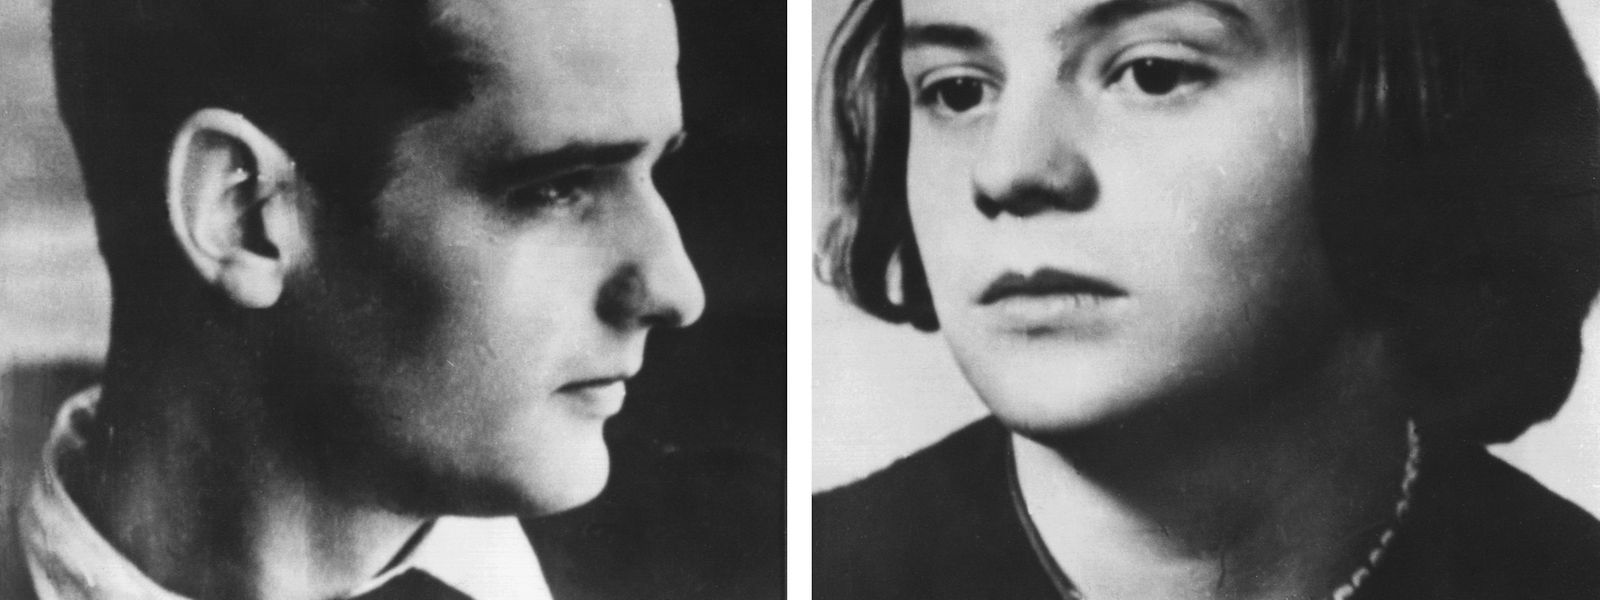 Hans und Sophie Scholl (undatierte Aufnahmen), Gründer bzw. Mitglieder der Widerstandsgruppe „Weiße Rose“ an der Münchner Universität, wurden nach einer Flugblattaktion gegen die Herrschaft des NS-Regimes verhaftet, vom Volksgerichtshof zum Tode verurteilt und am 22. Februar 1943 in München-Stadelheim hingerichtet.